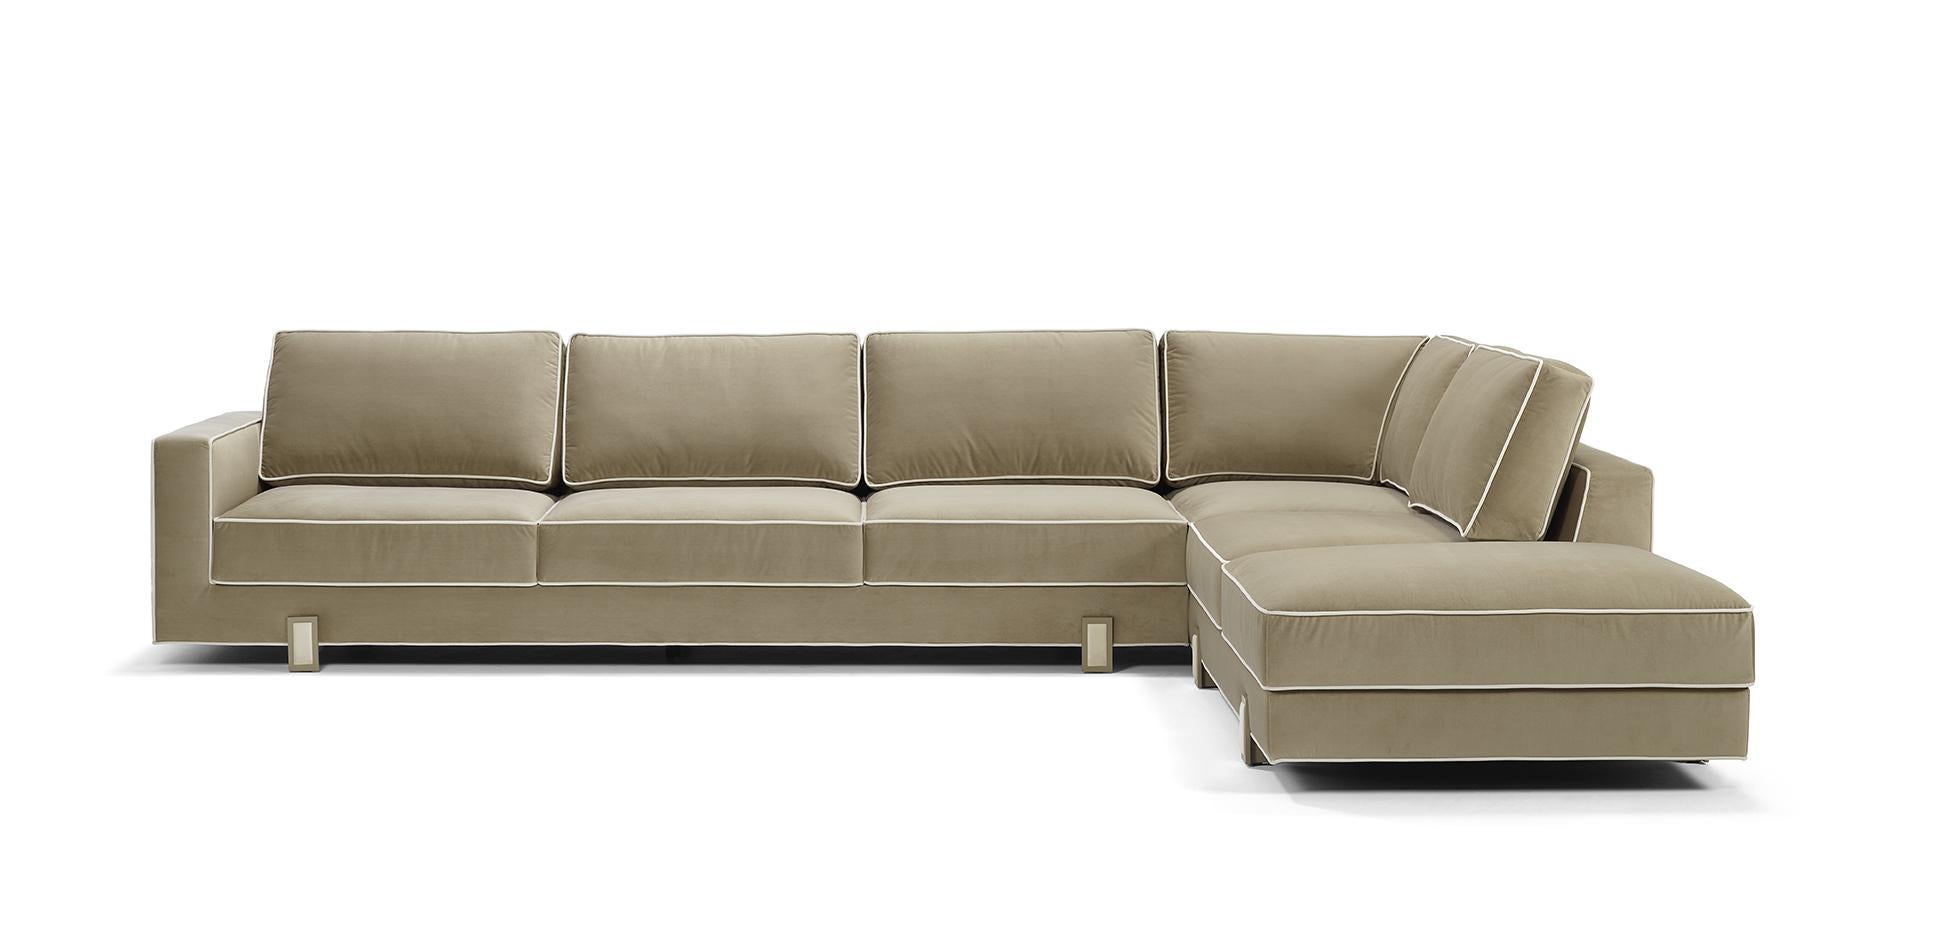 Le canapé d'angle LUSO est une pièce très délicate, avec des détails particuliers, conçue pour être utilisée au quotidien. Tapissé de deux tissus, avec un passepoil contrasté pour un résultat raffiné. Les pieds, de couleur laiton antique, ont un